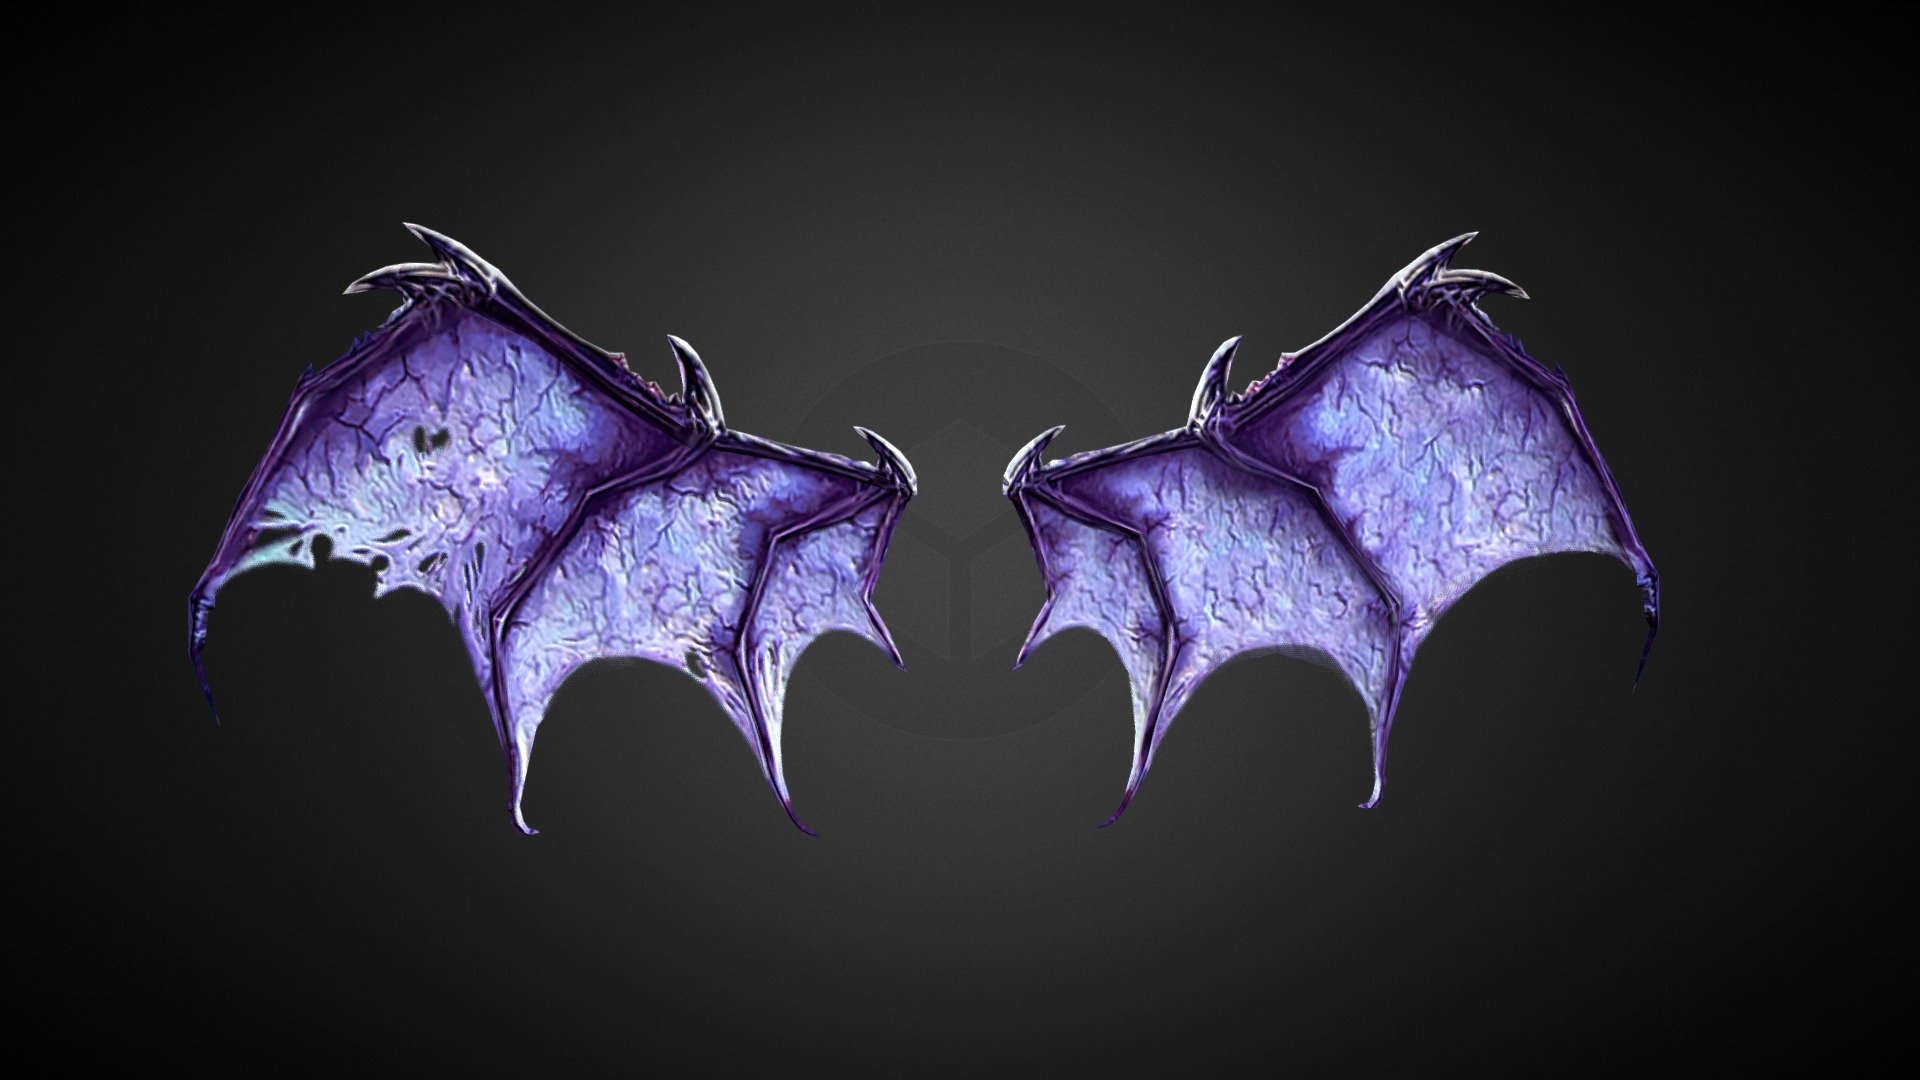 DTW project - dark-terror-wings - 3D model by holygladiators 3d model